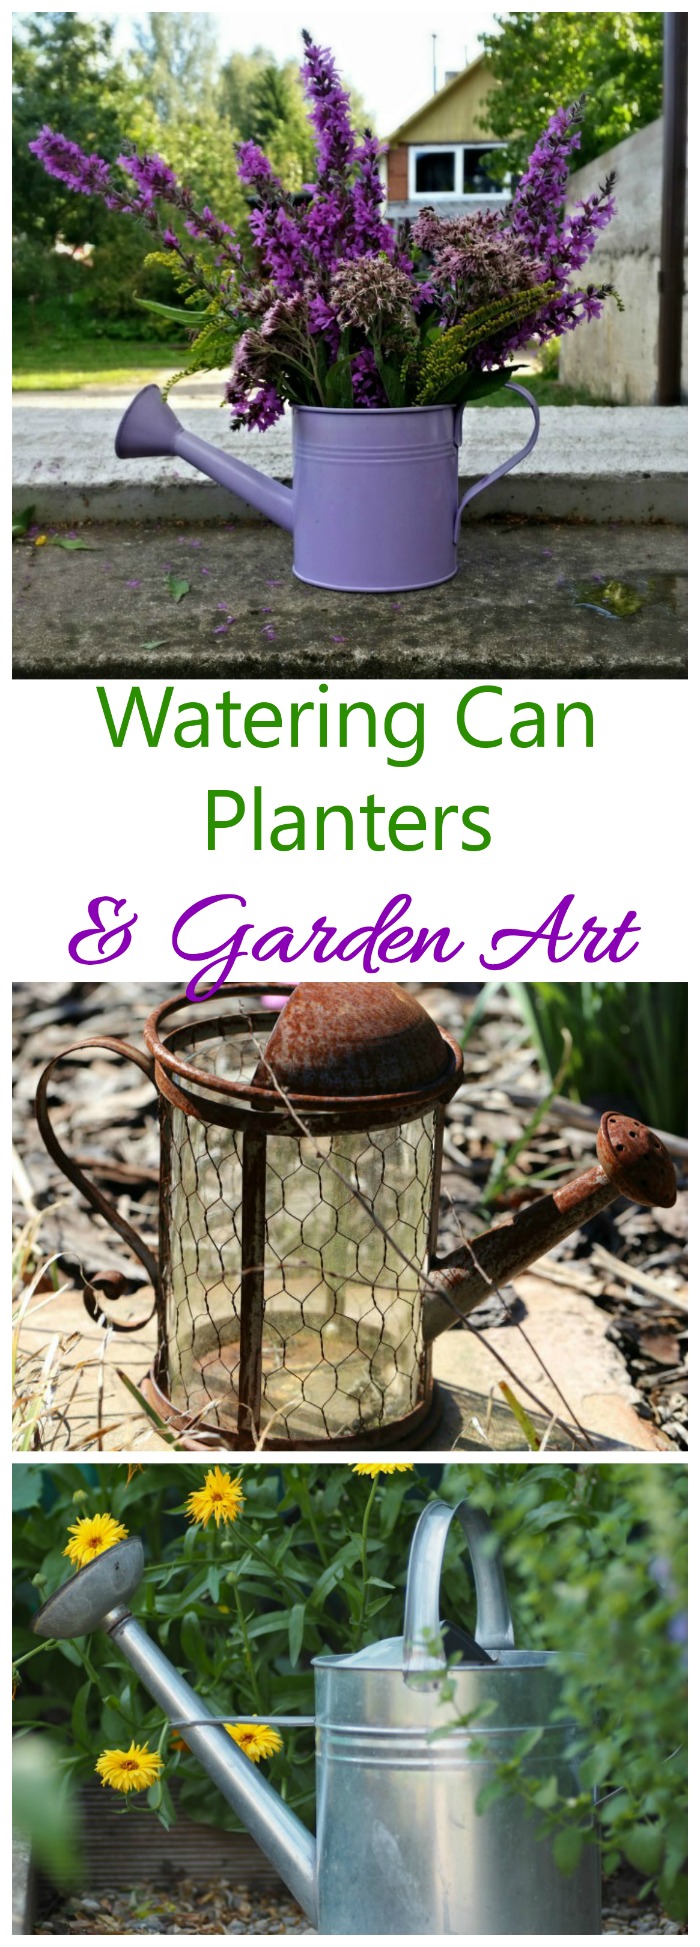 Vandkandeplanter og havekunst - genbrug dine vandkander